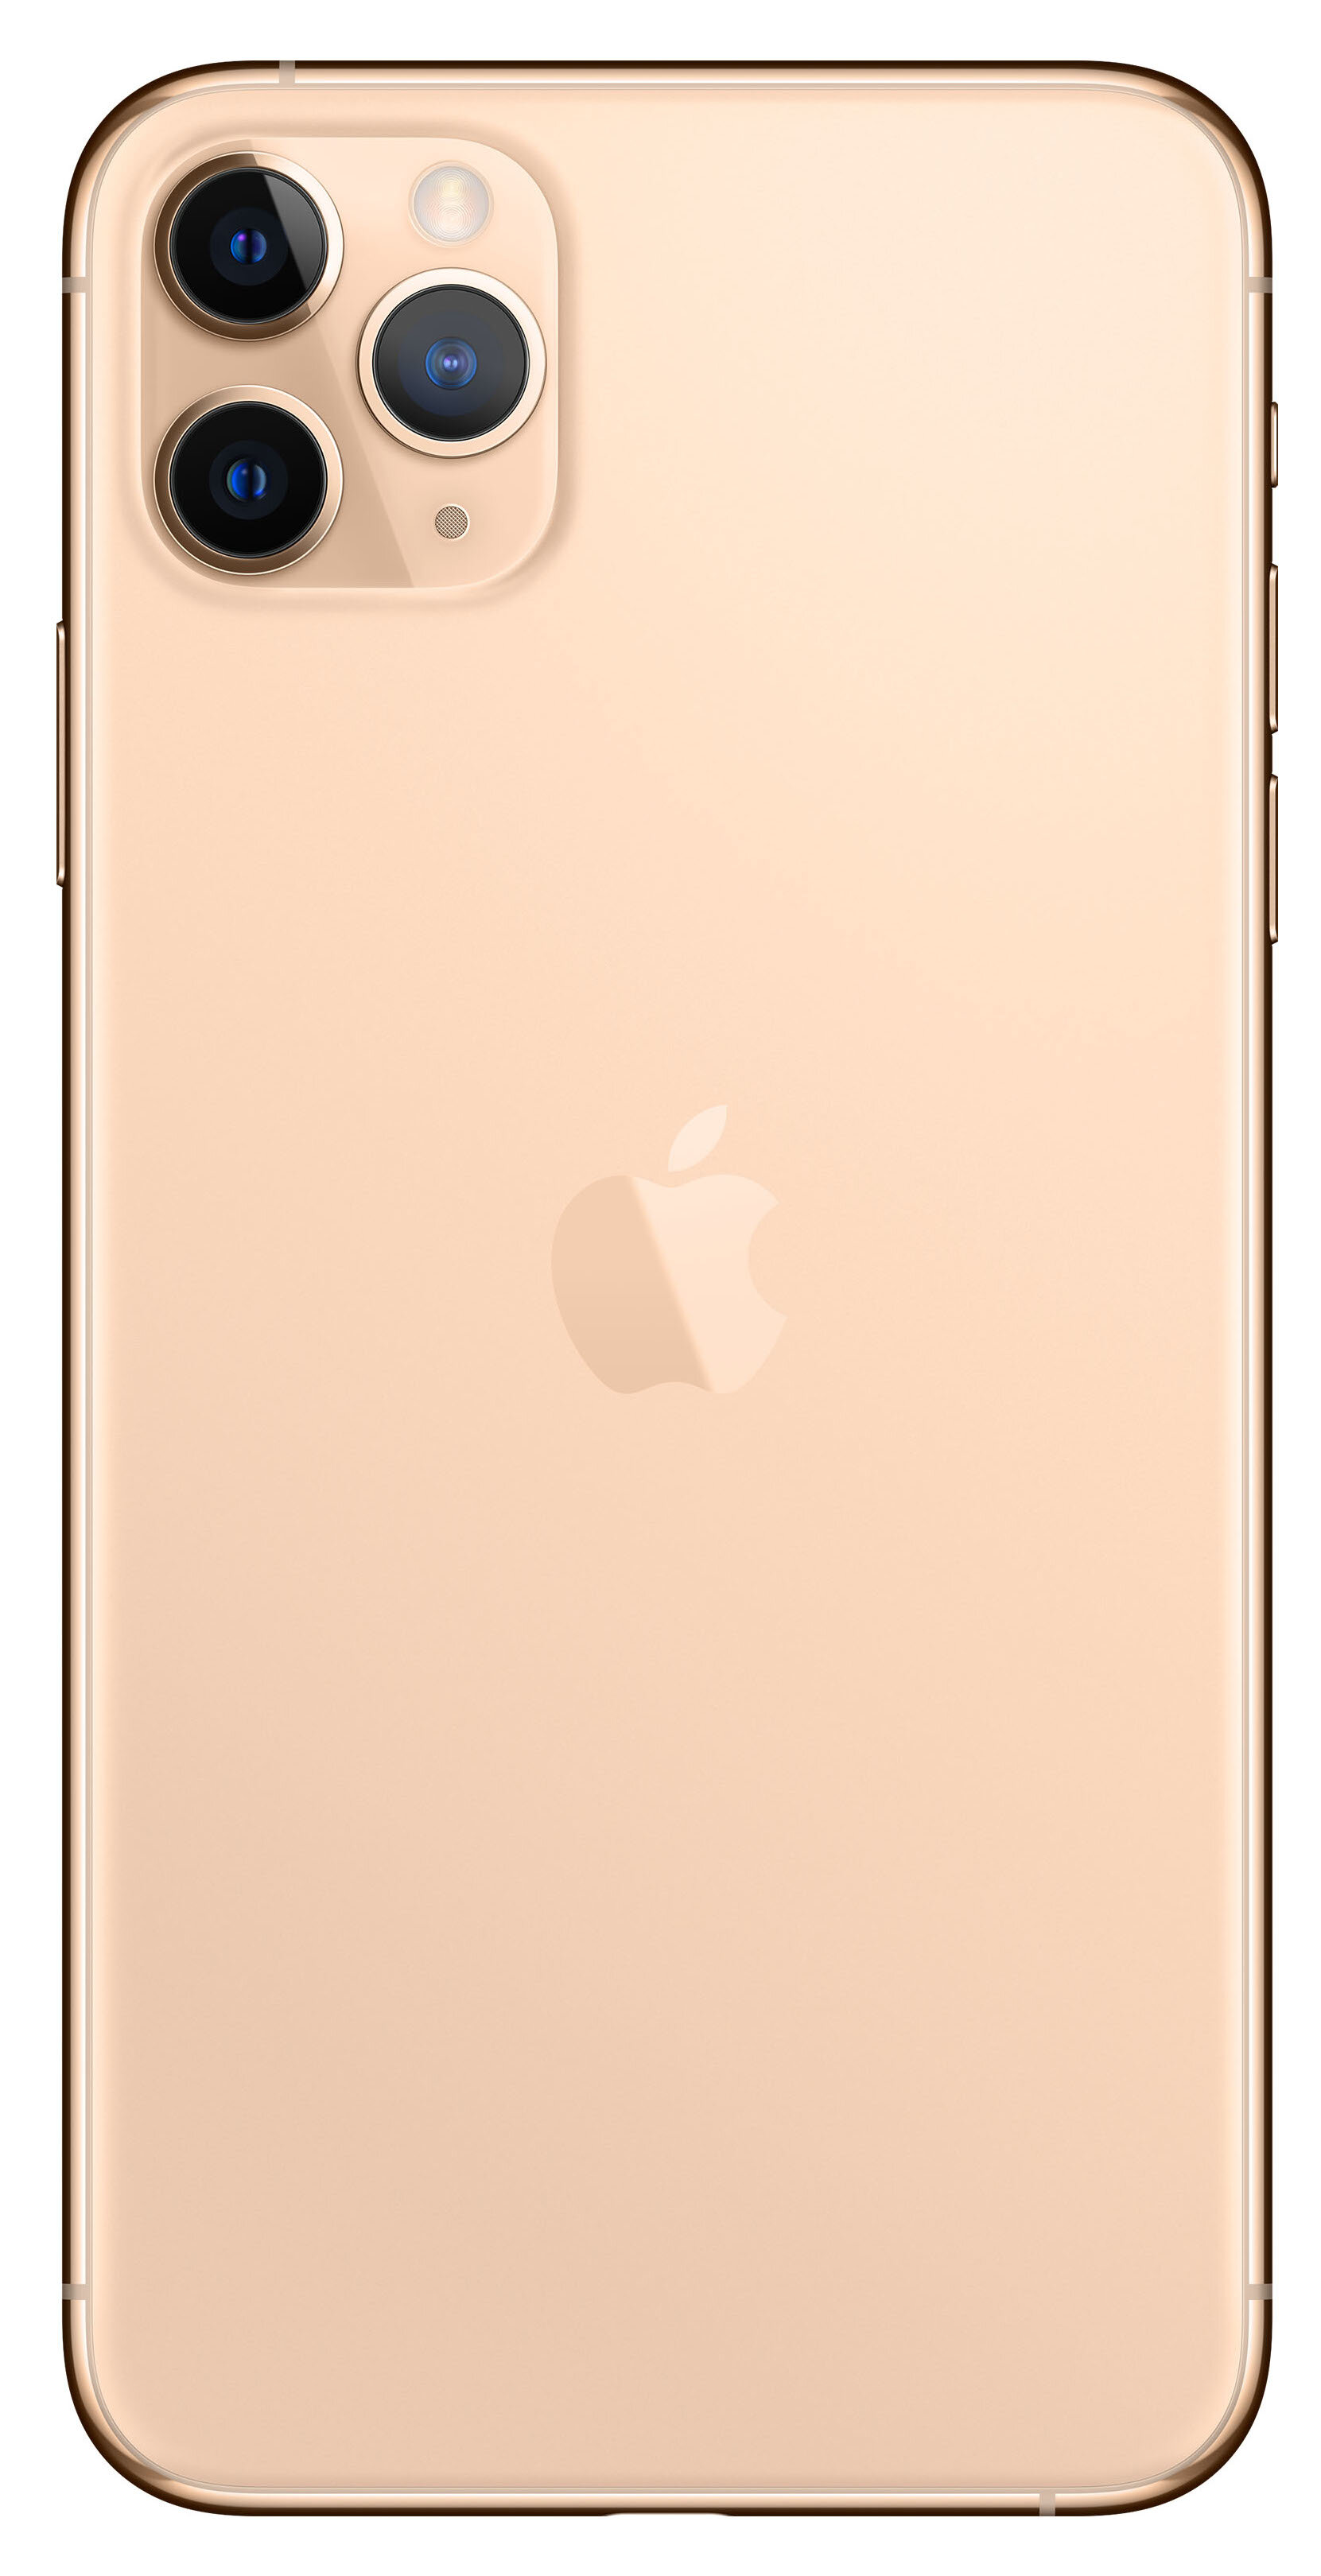 APPLE iPhone 11 Pro Max 512GB 6.5" Złoty MWHQ2PM/A Smartfon - niskie ceny i  opinie w Media Expert